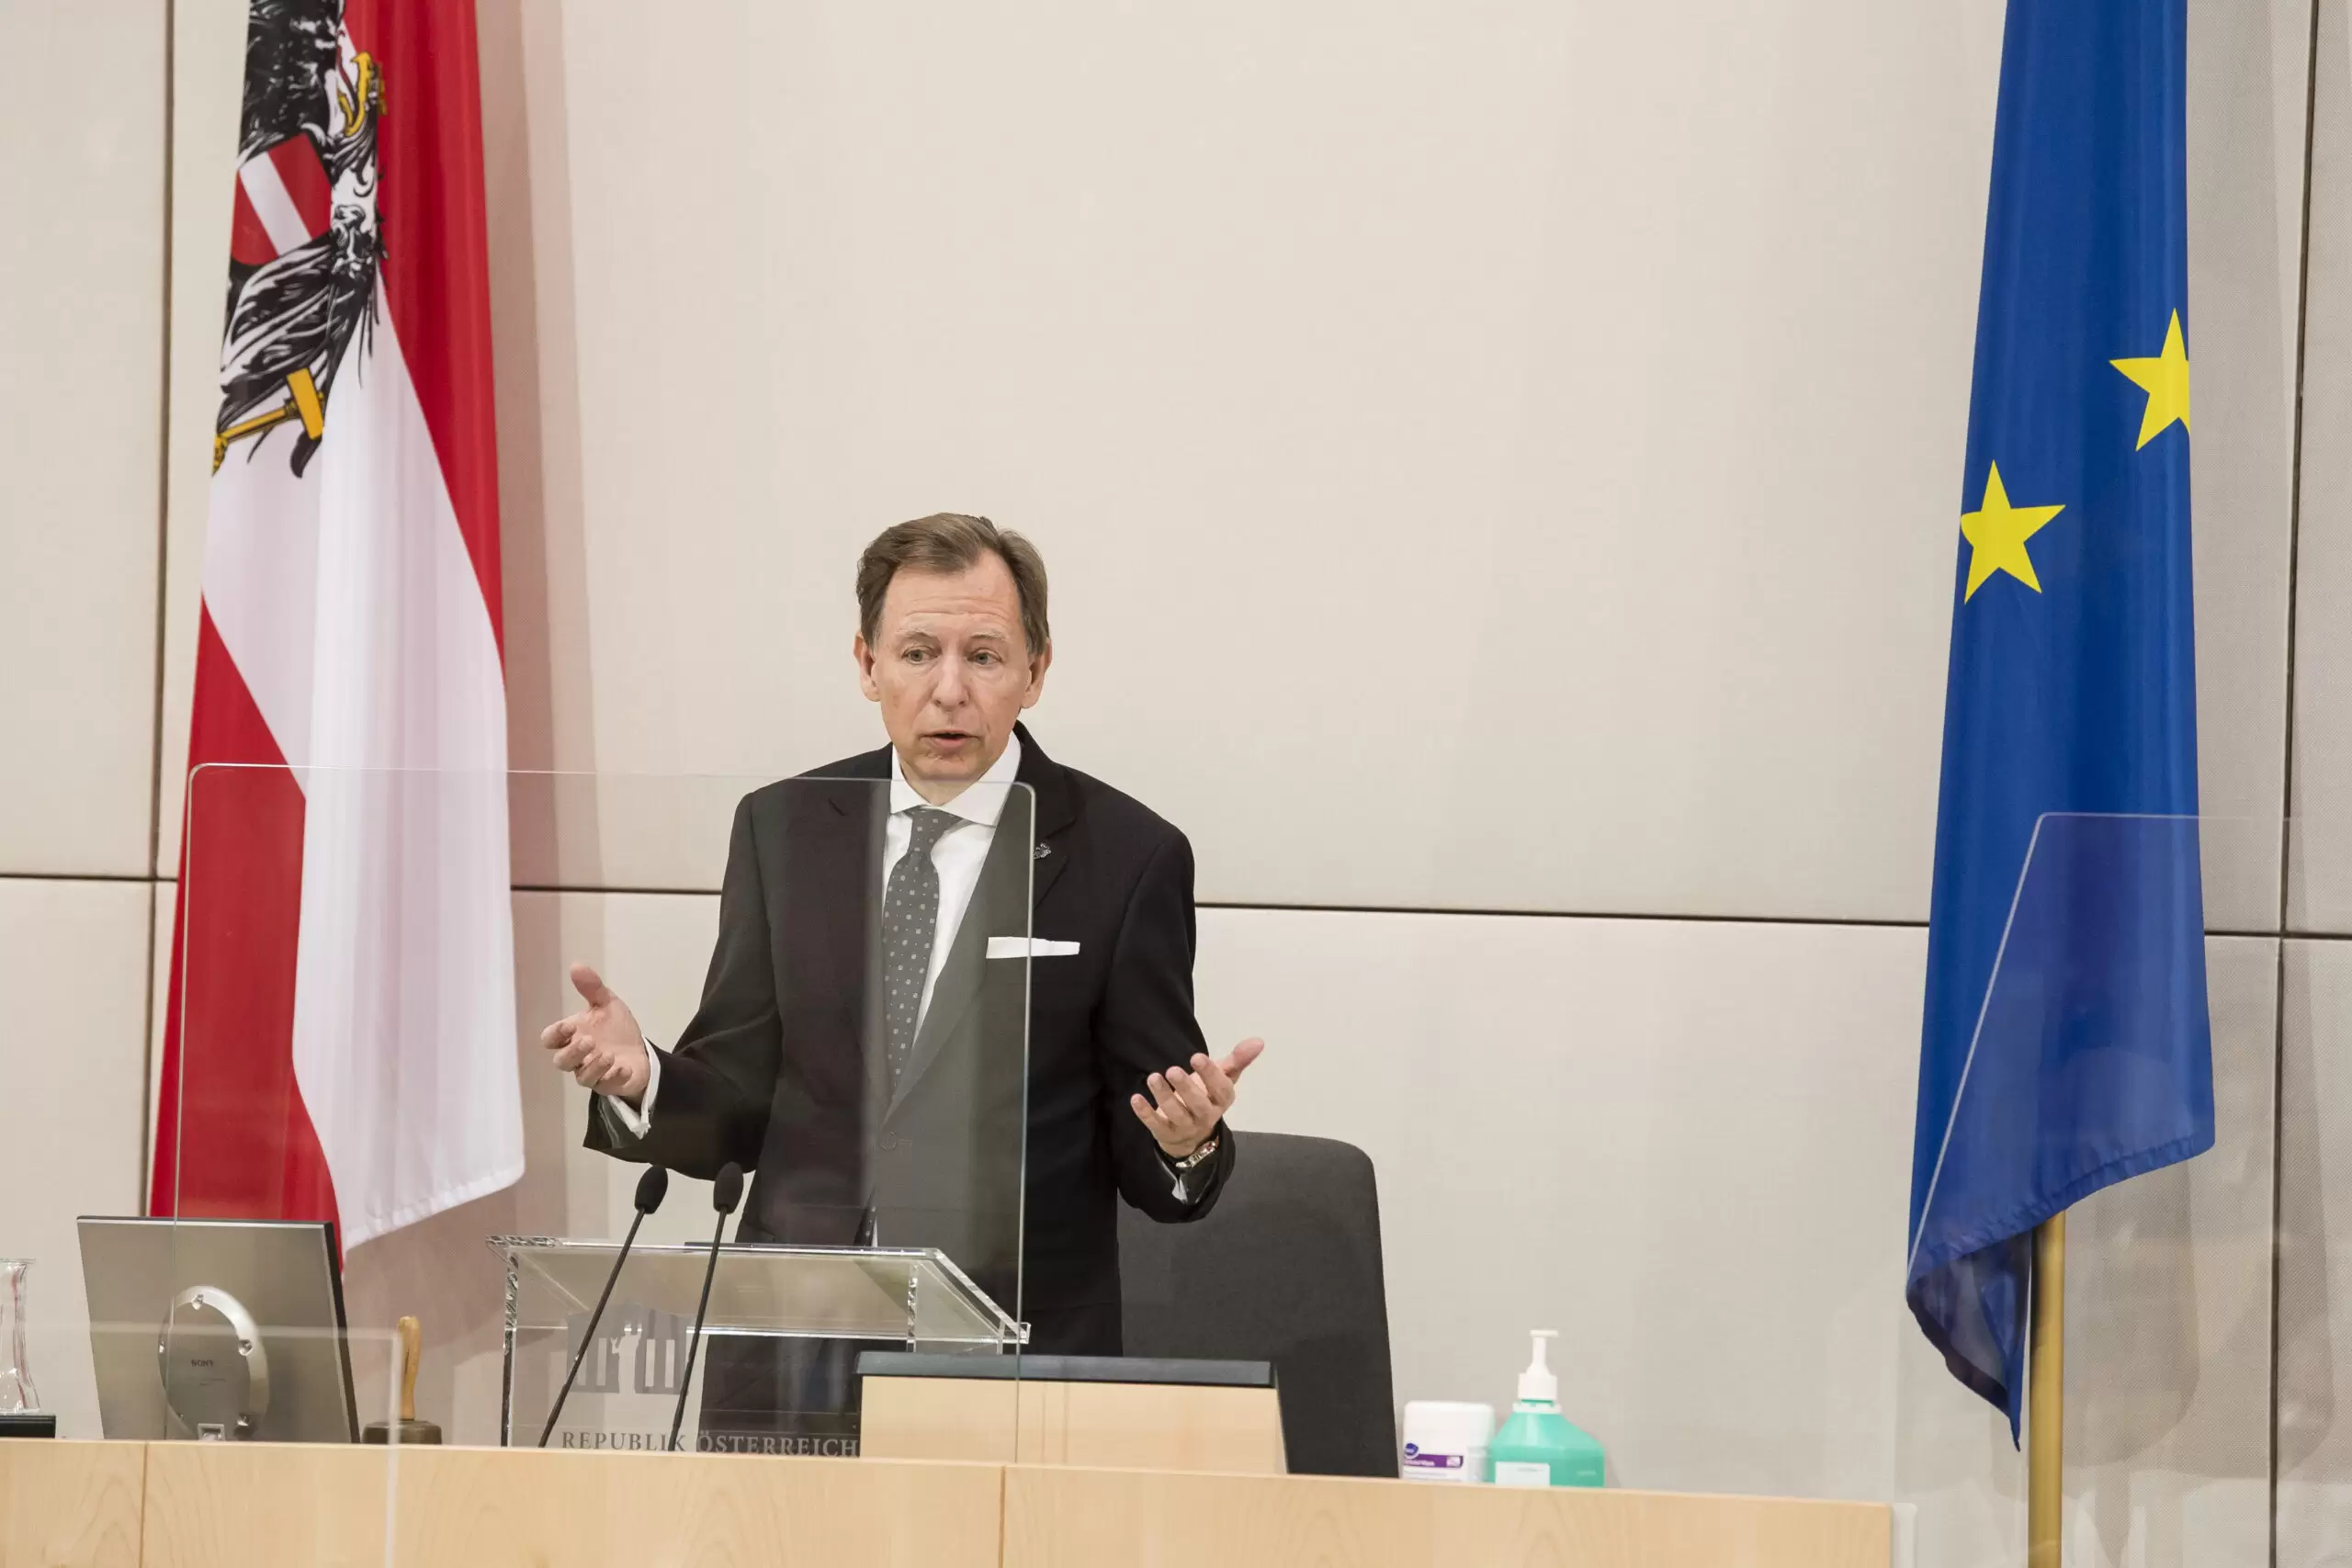 Christian Buchmann, Vorsitzender des EU-Ausschusses des Bundesrates. Foto: Parlament/Thomas Jantzen